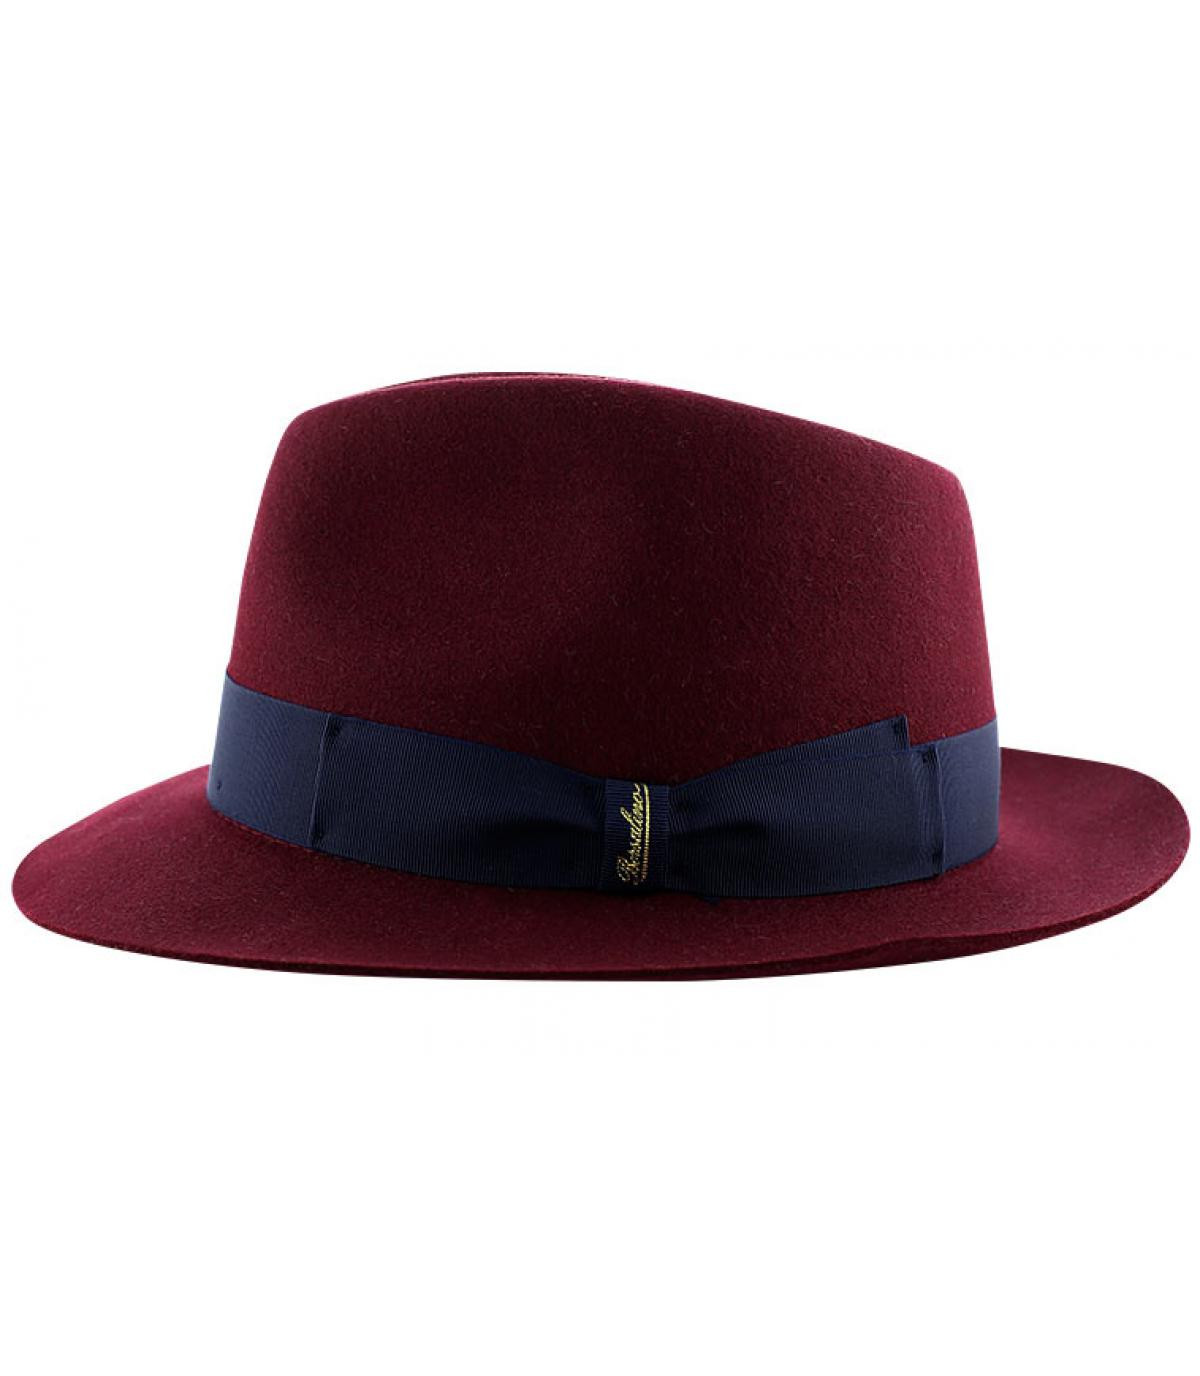 Borsalino burgundy borsalino hat